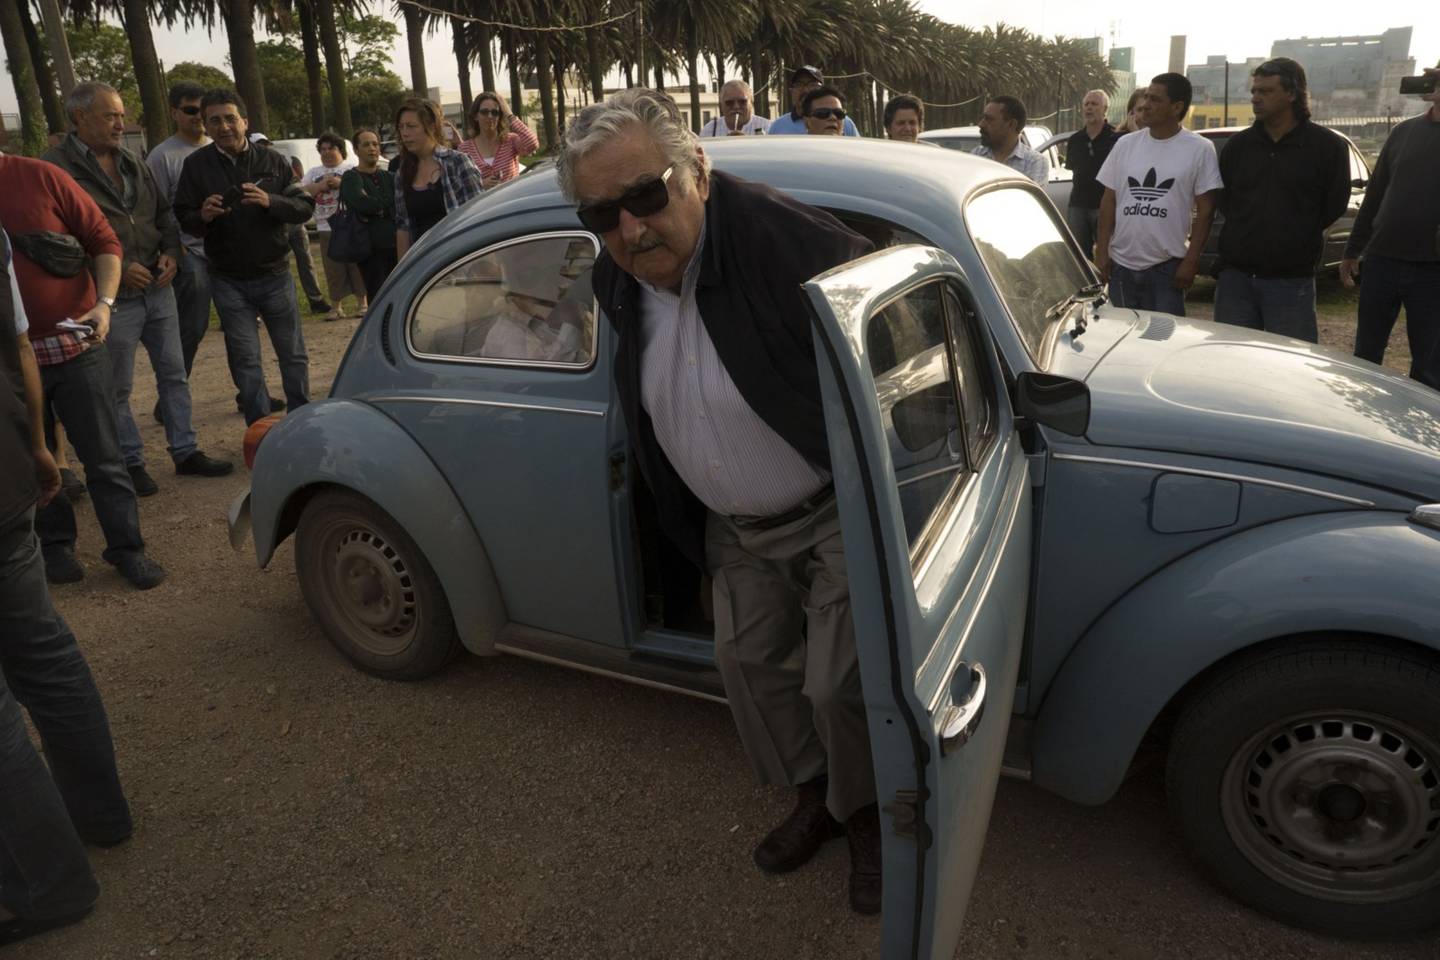 El líder político llega a un colegio electoral en su propio automóvil en Montevideo, Uruguay, el domingo 26 de octubre de 2014.dfd